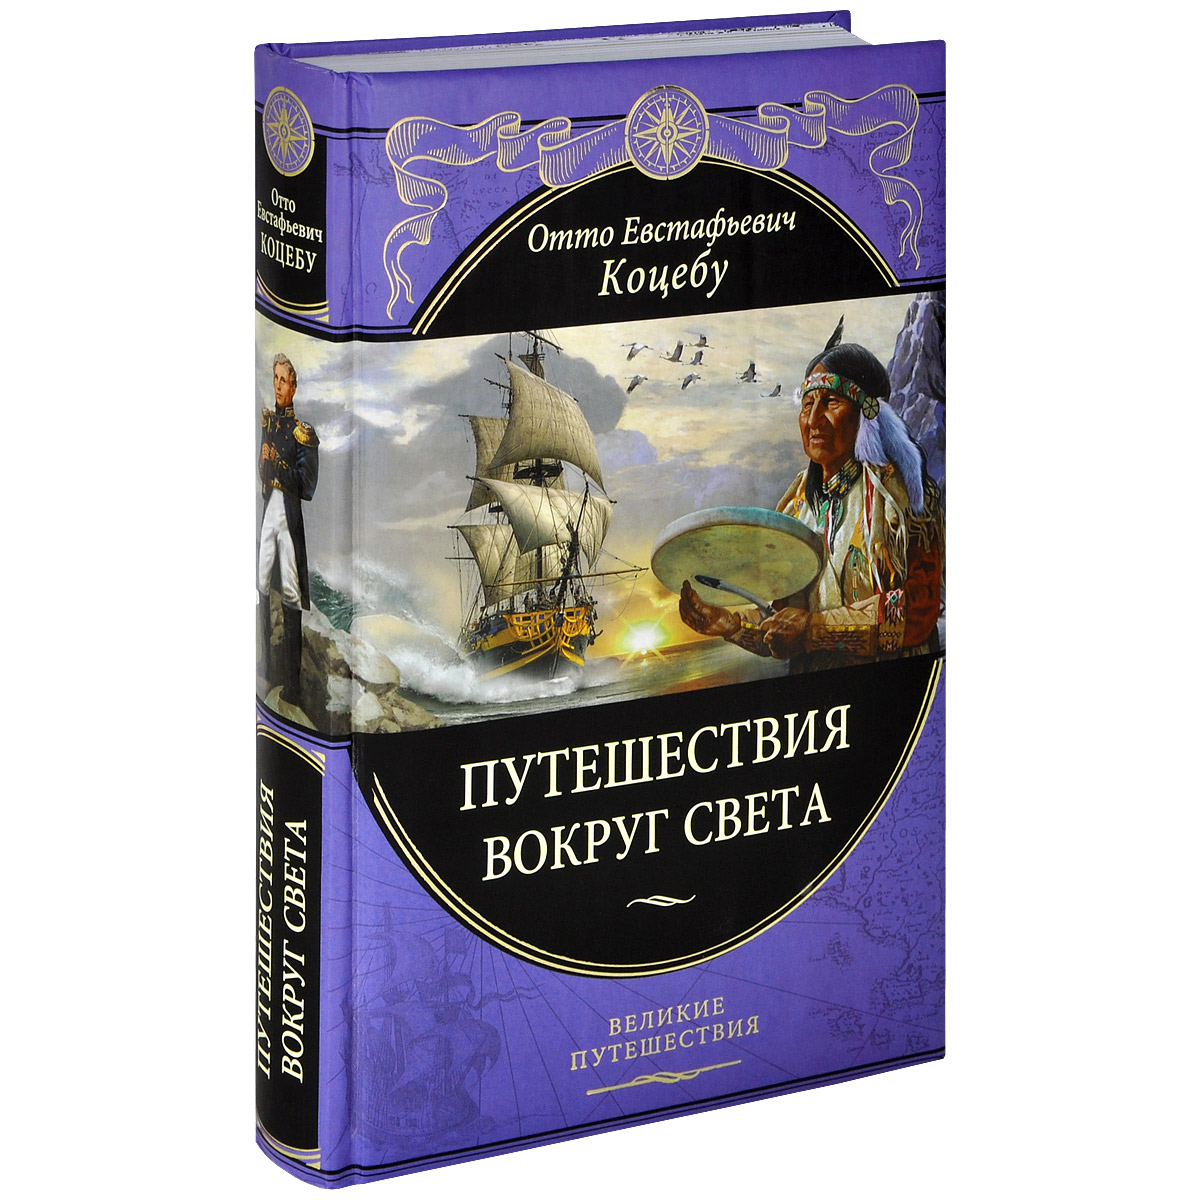 Книга Путешествие вокруг света - купить книгу путешествие вокруг света от Отто Коцебу в книжном интернет магазине с доставкой по выгодной цене